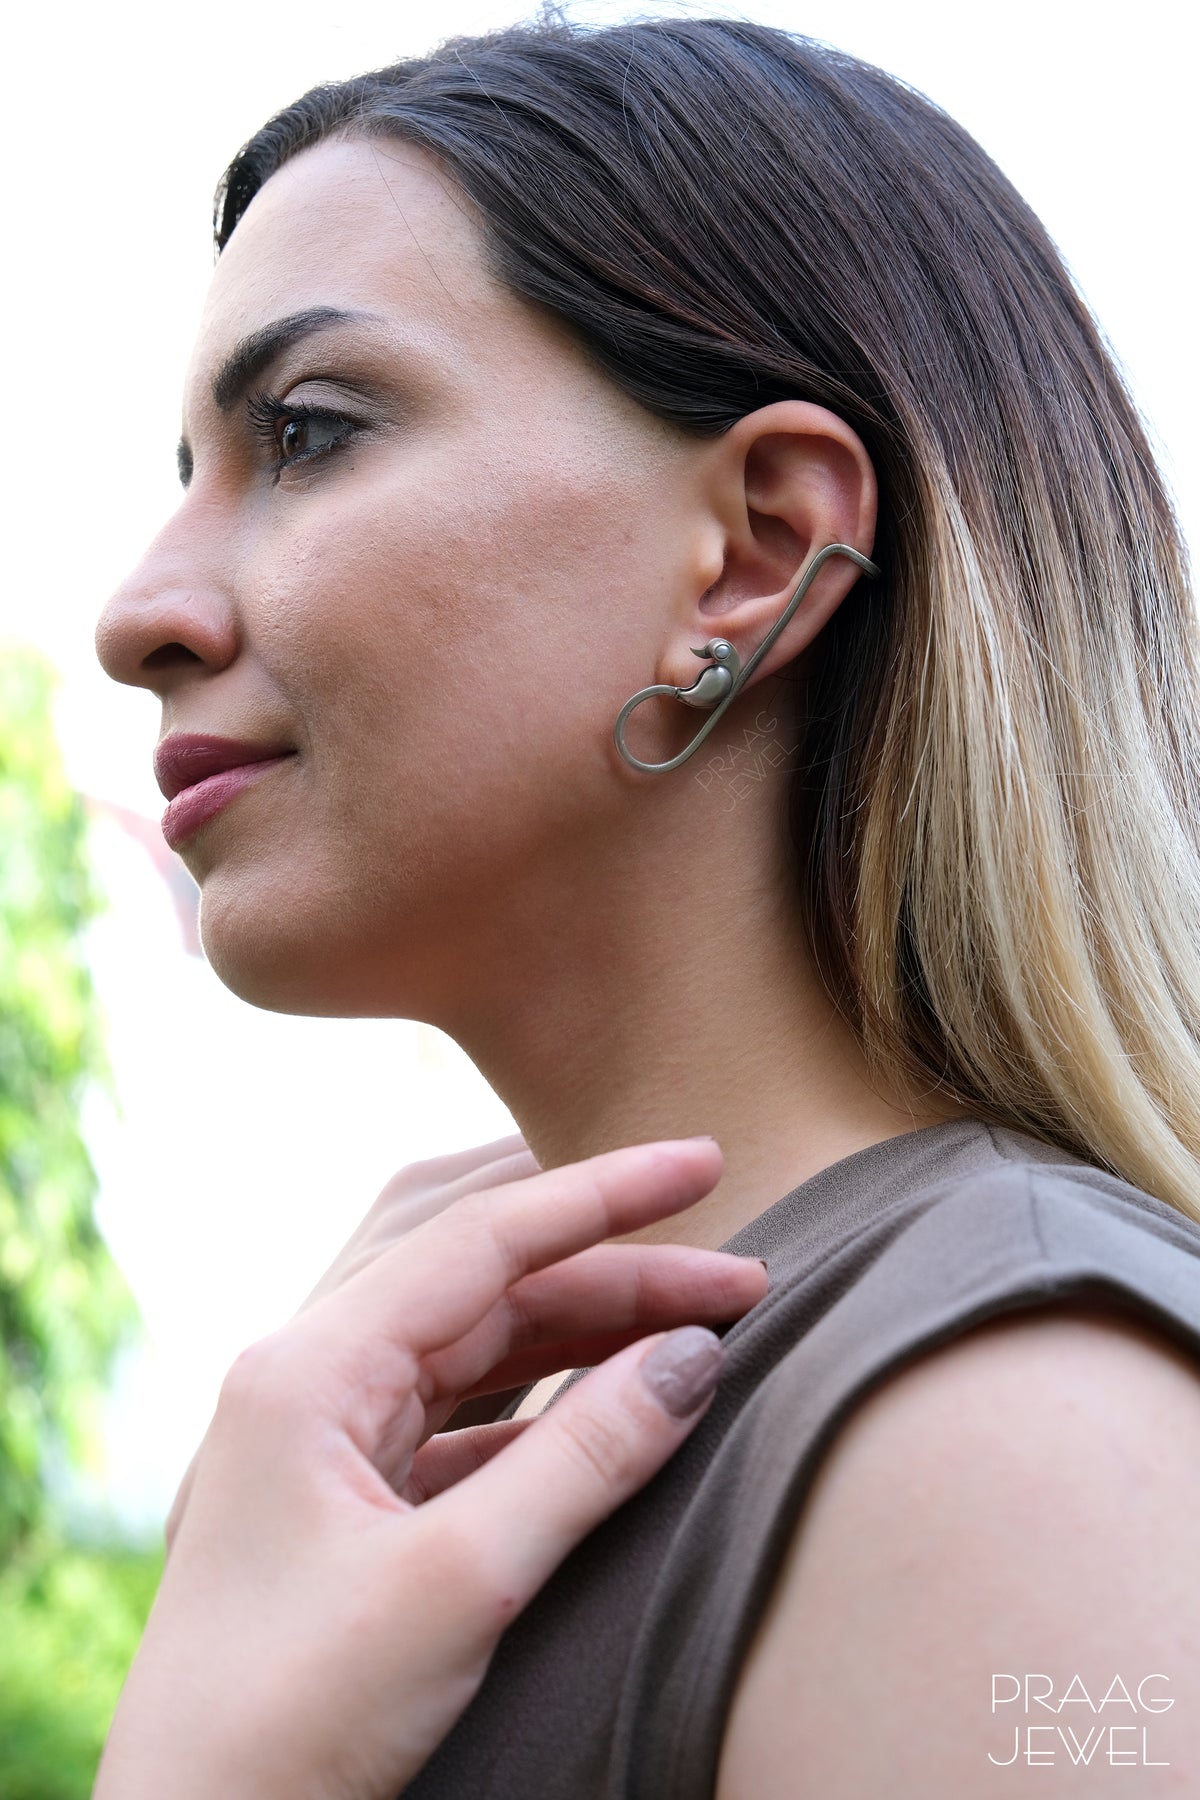 Silver Earrings | Silver Earrings Image | silver earring | sterling silver earring | 925 silver earring | earrings for girl 